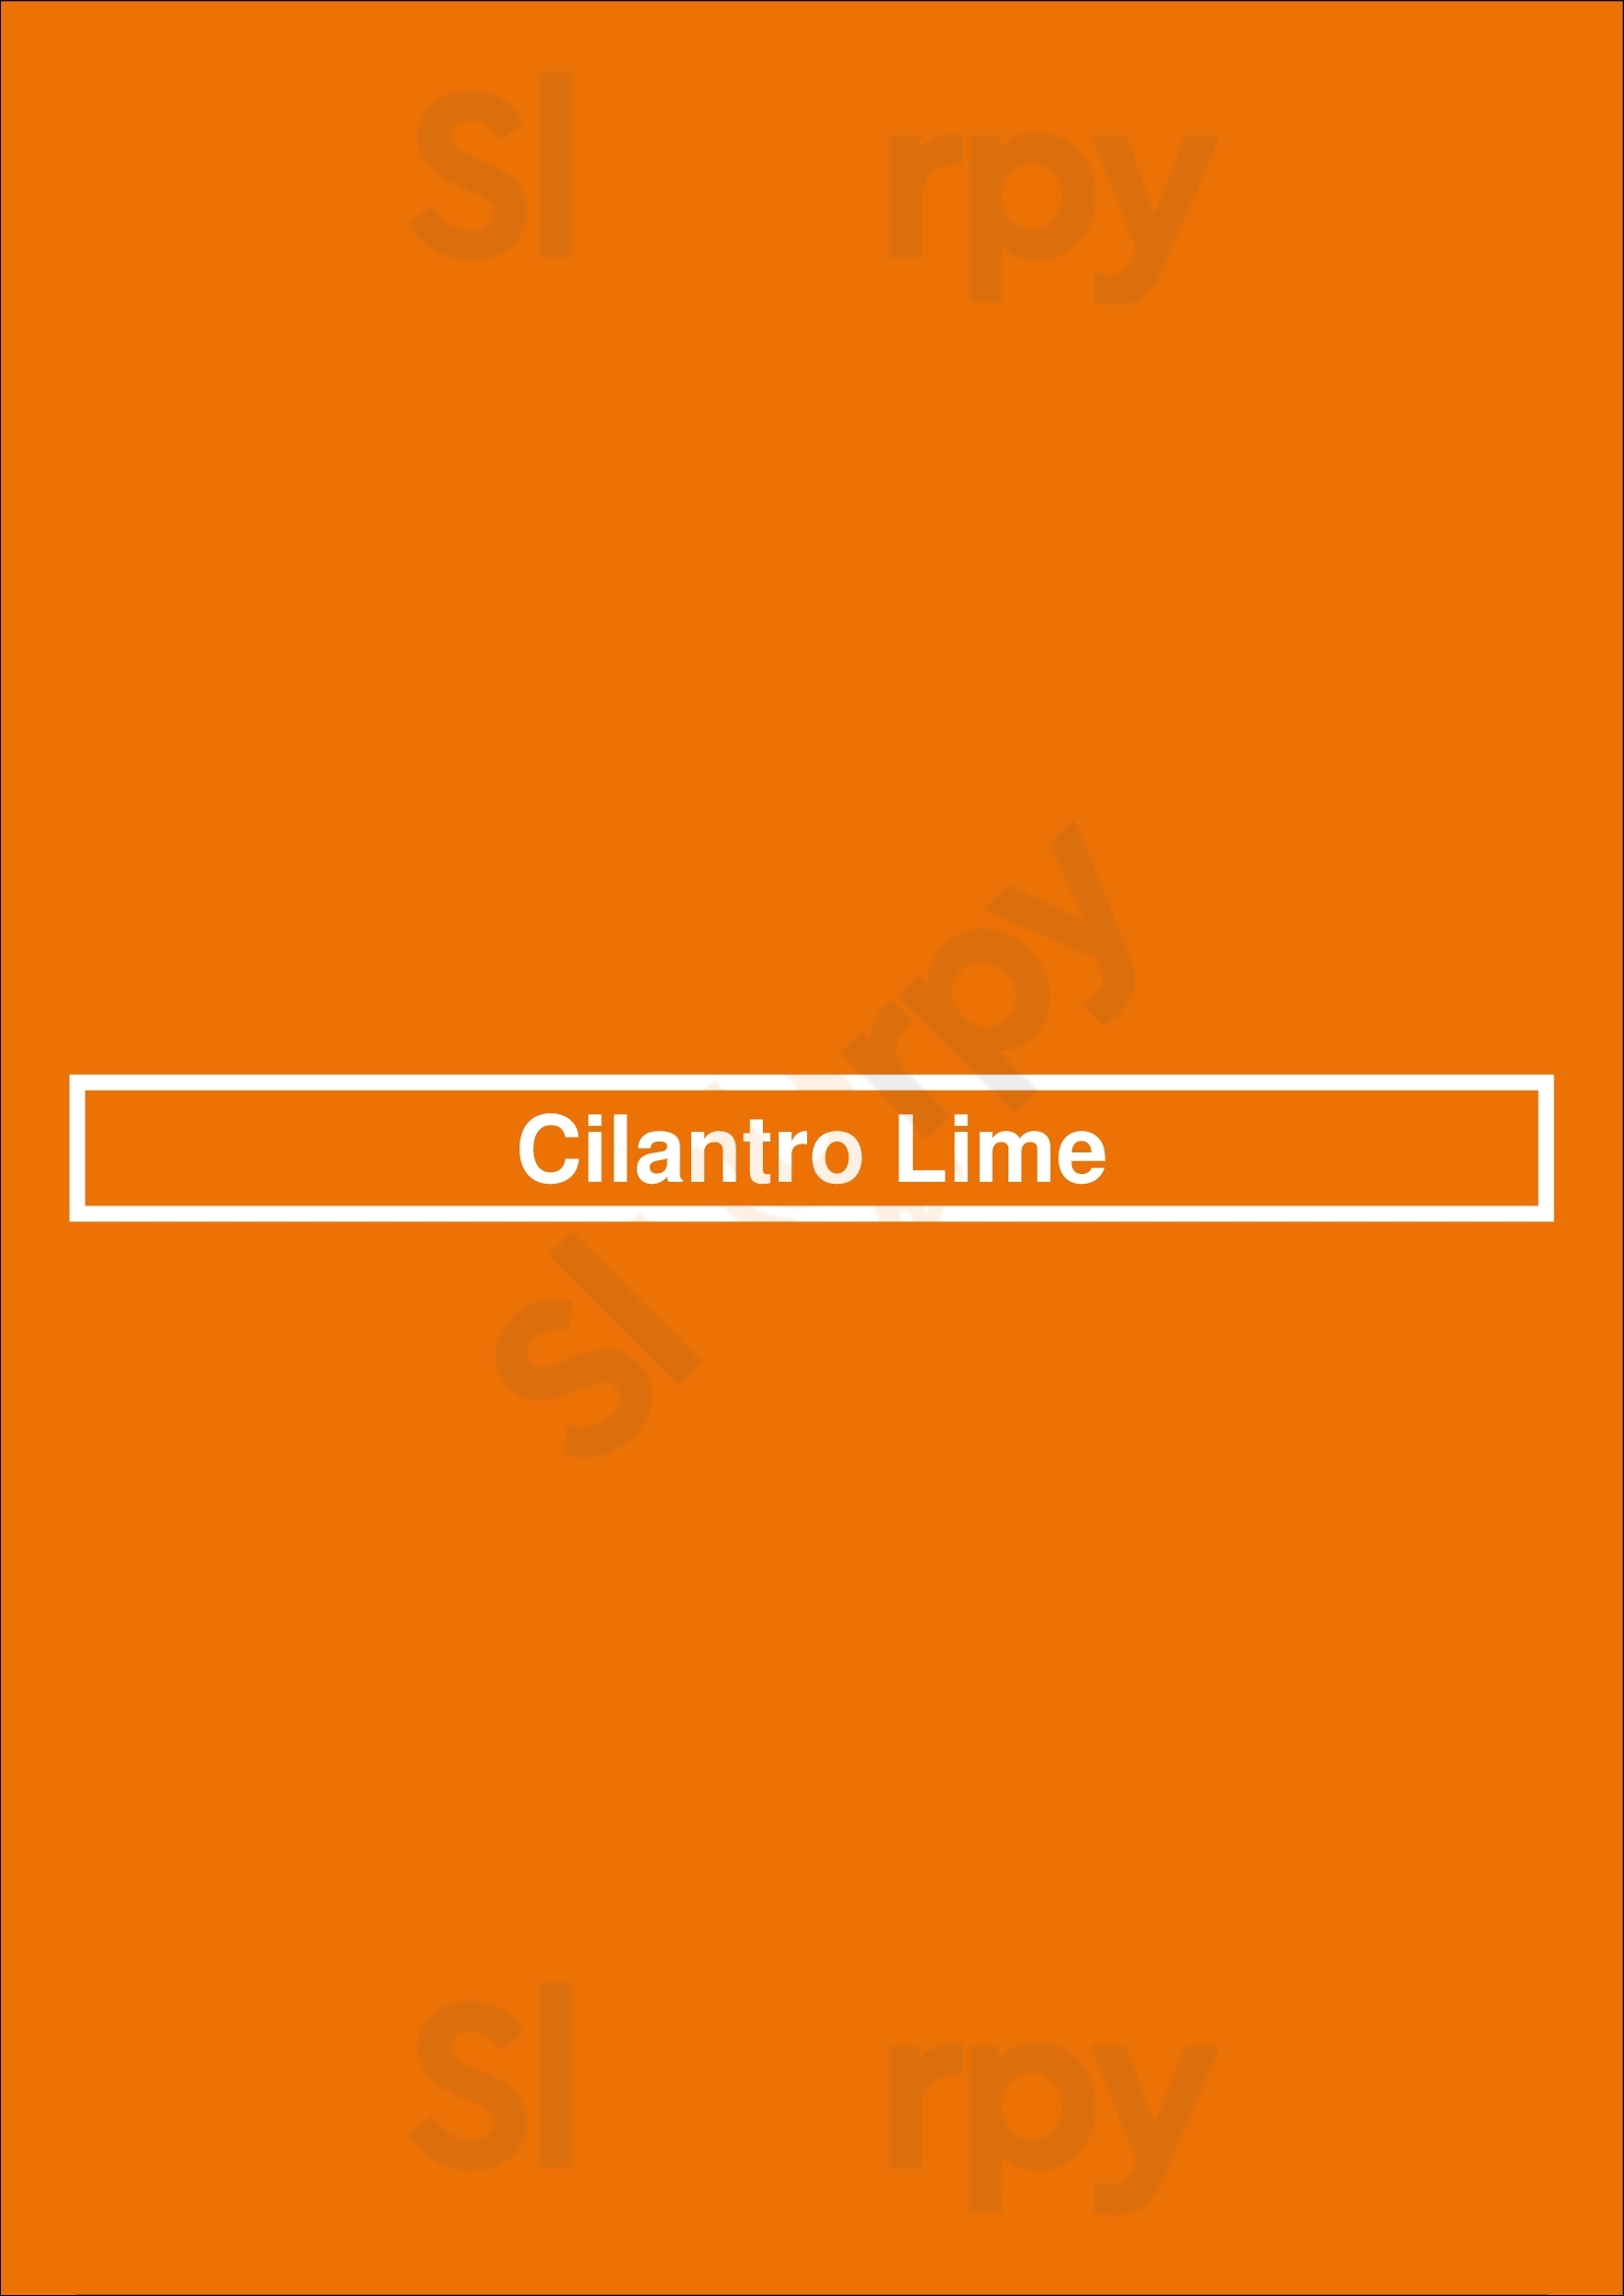 Cilantro Lime Los Angeles Menu - 1